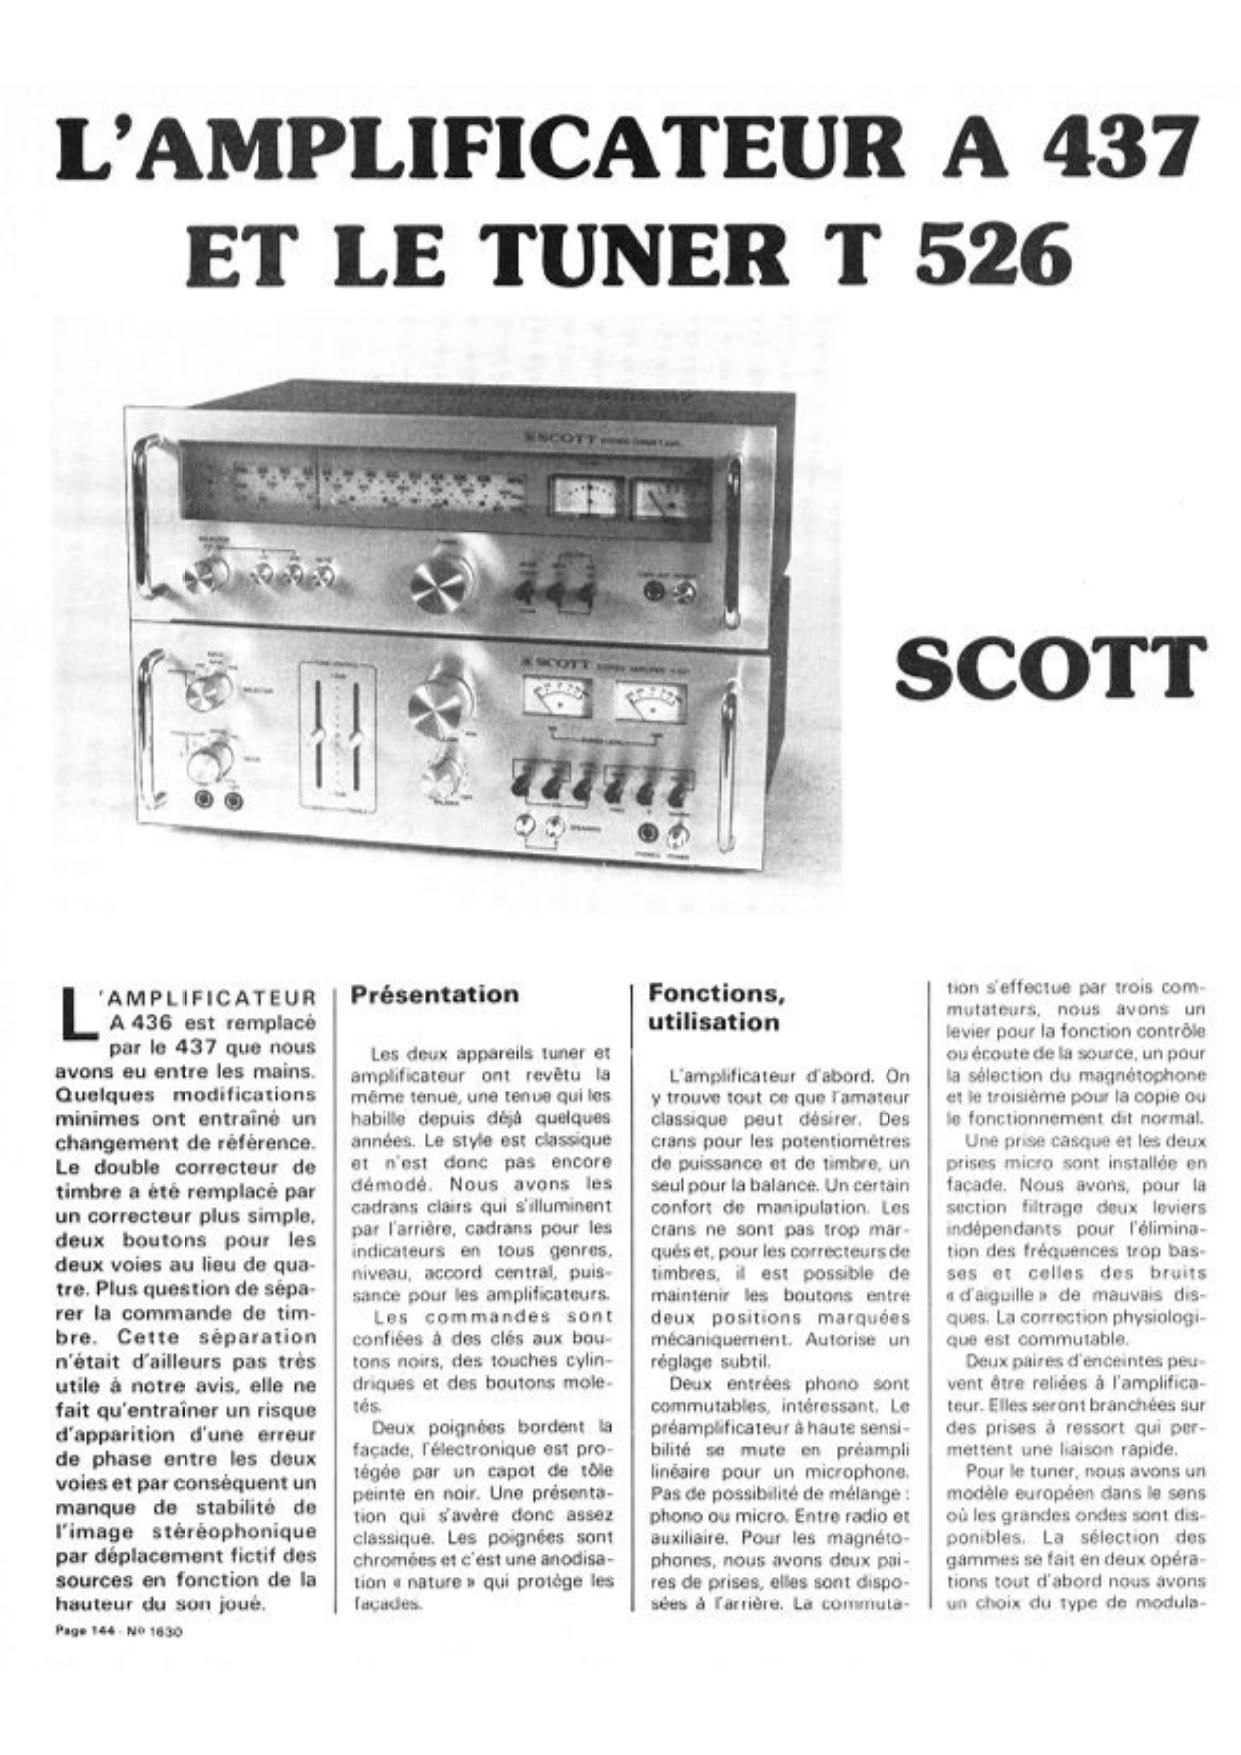 Scott A437 T526